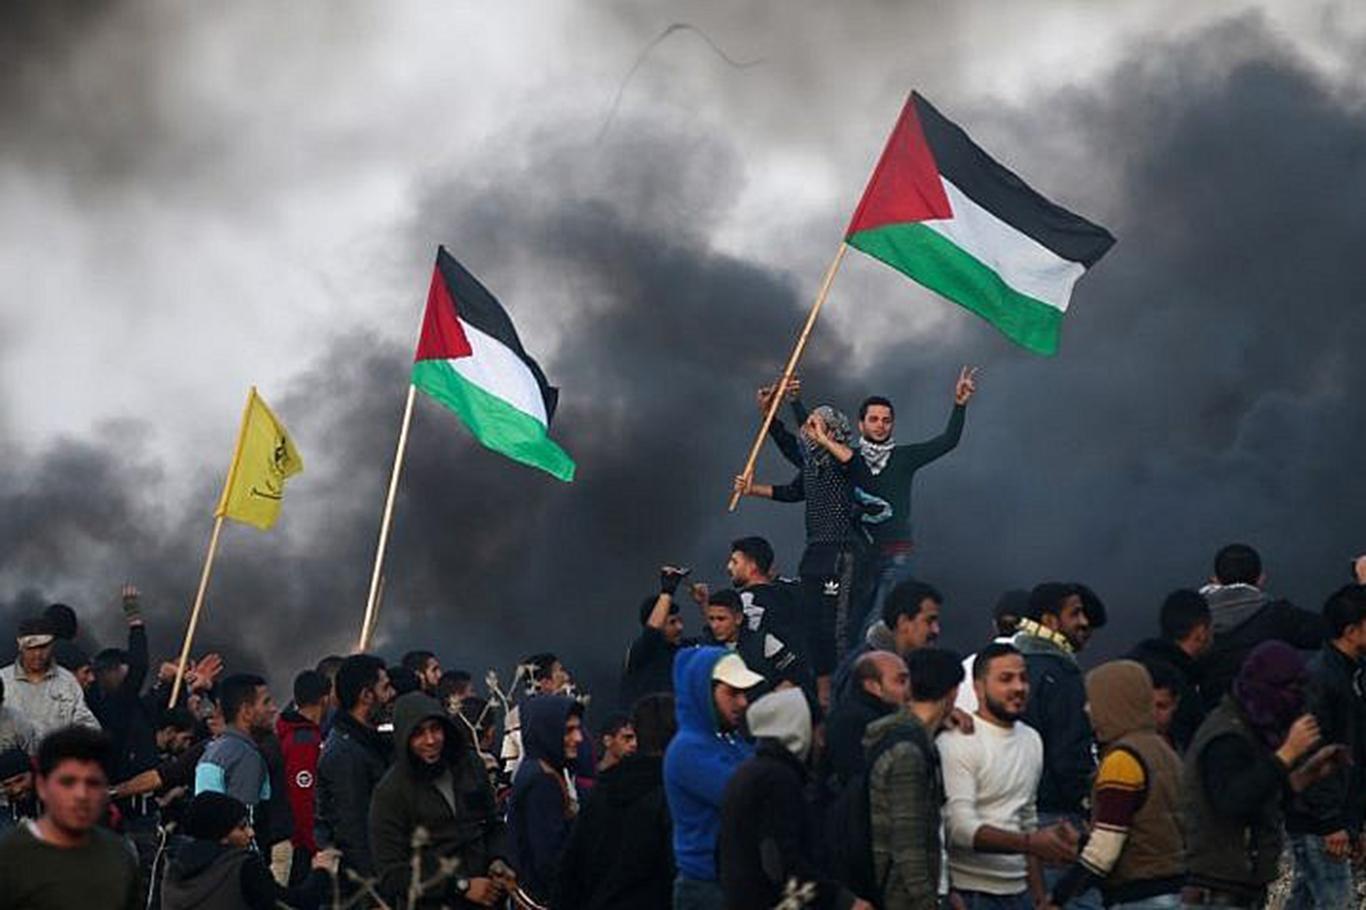 4 martyrs in Gaza 316 injured